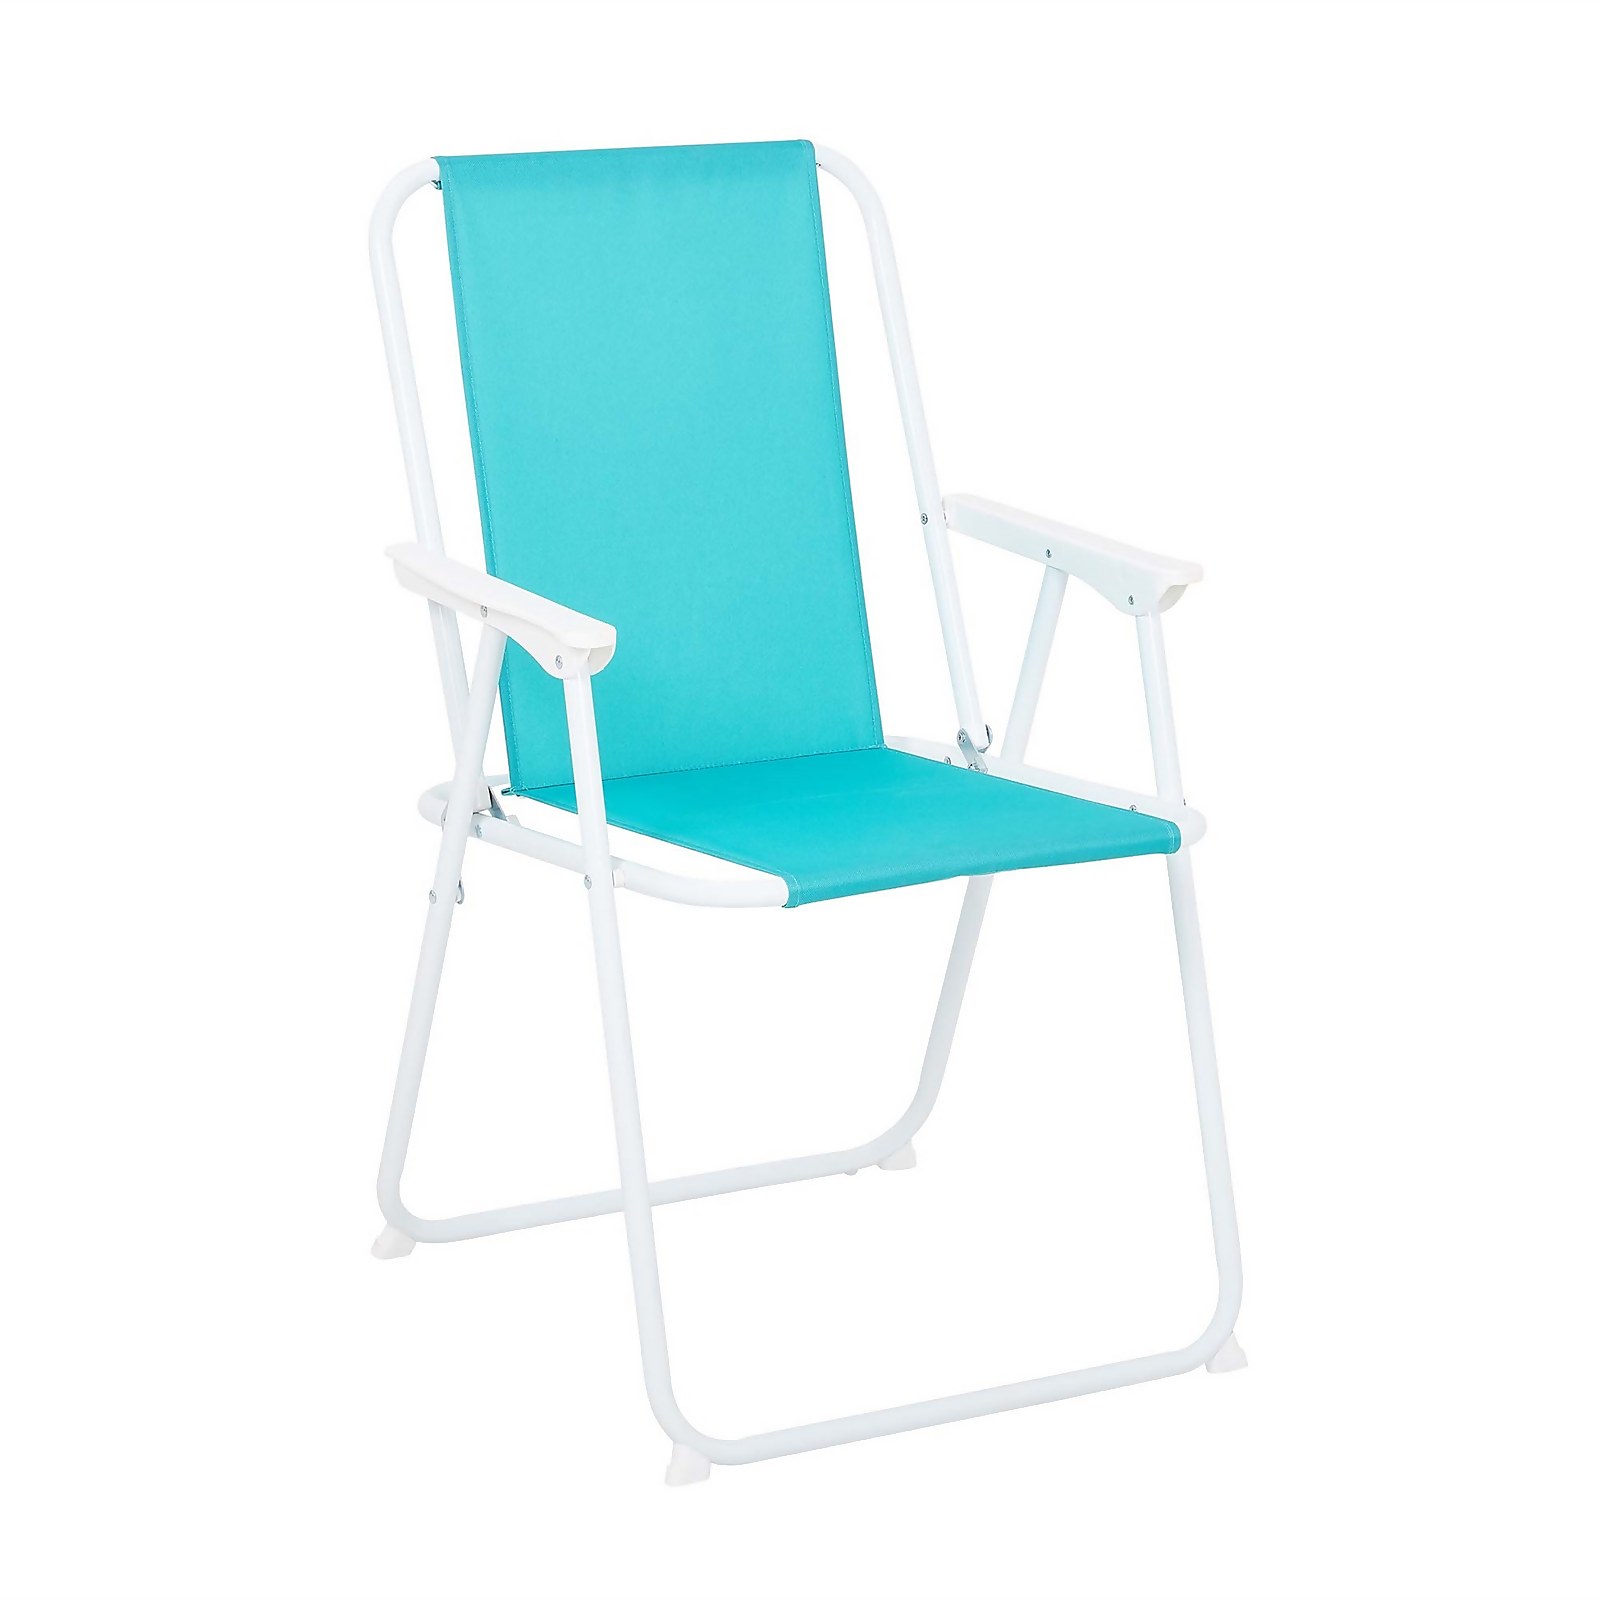 Photo of Bahari Picnic Chair - Blue